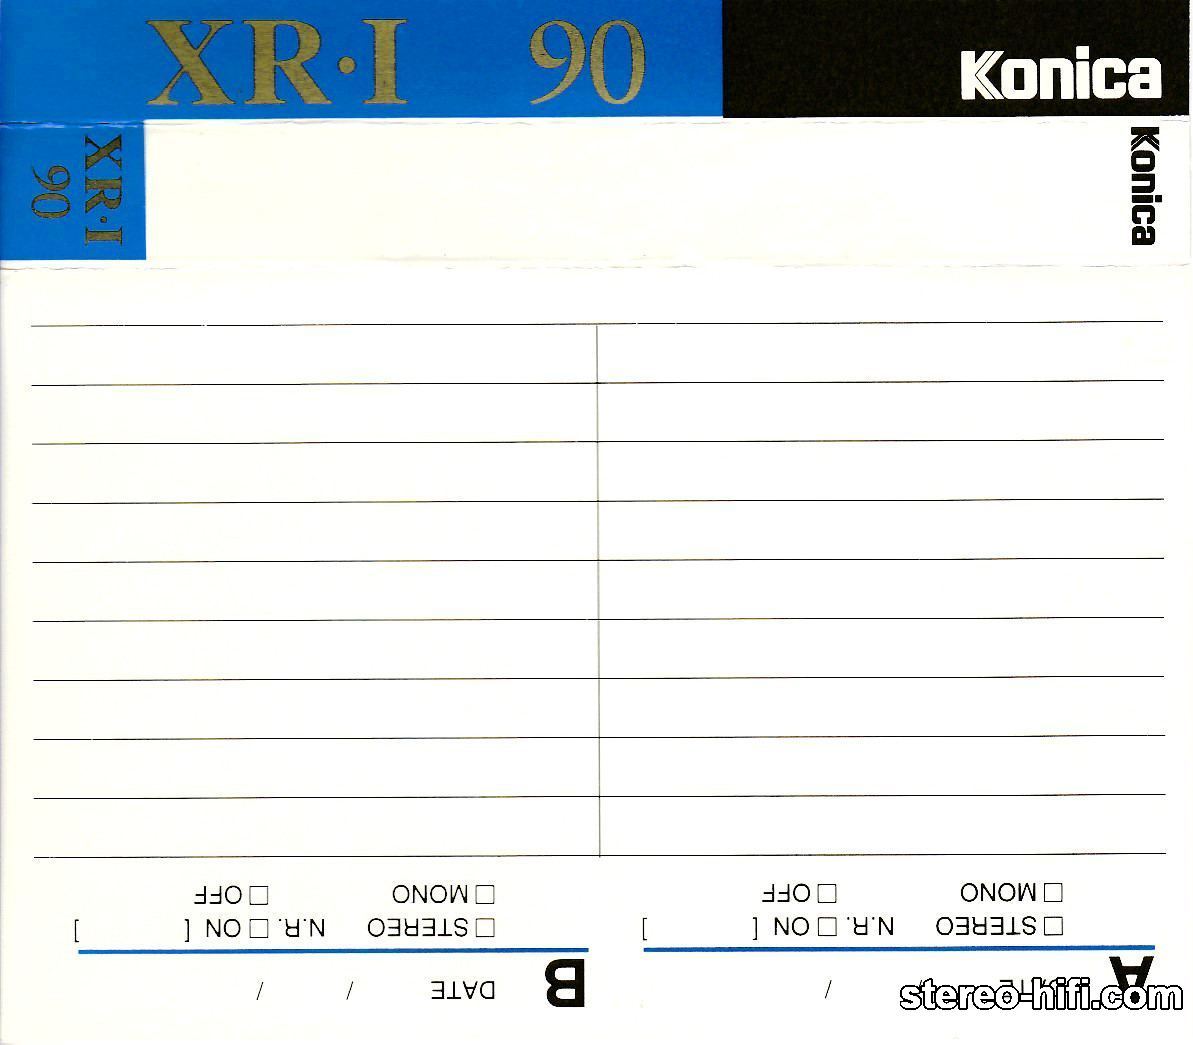 KONICA XR-I C90 - 1990r